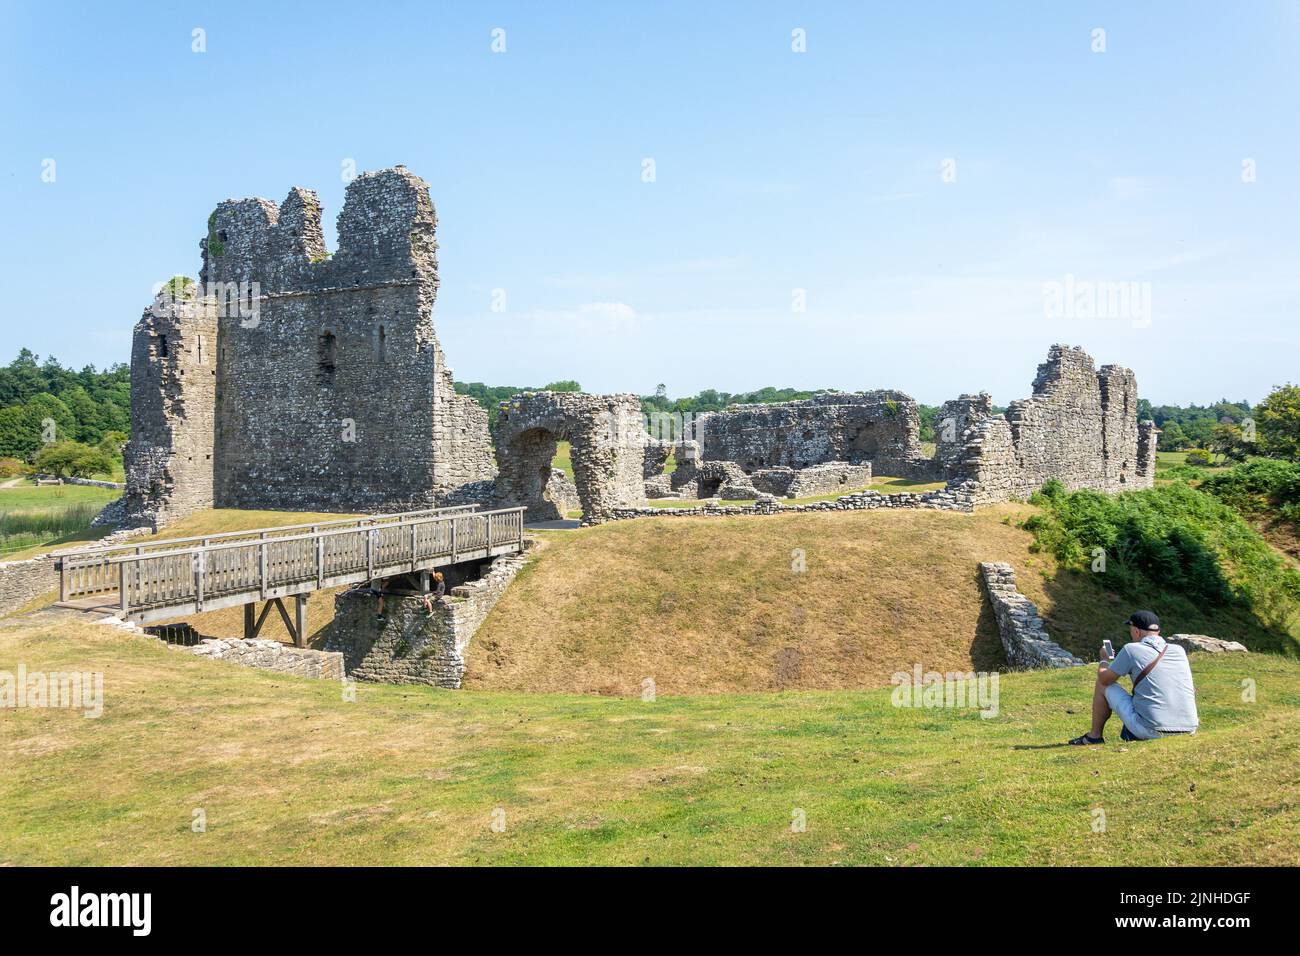 Rovine del castello di pietra normanna, Castello di Ogmore, Ogmore, vale of Glamorgan (Bro Morgannwg), Galles (Cymru), Regno Unito Foto Stock